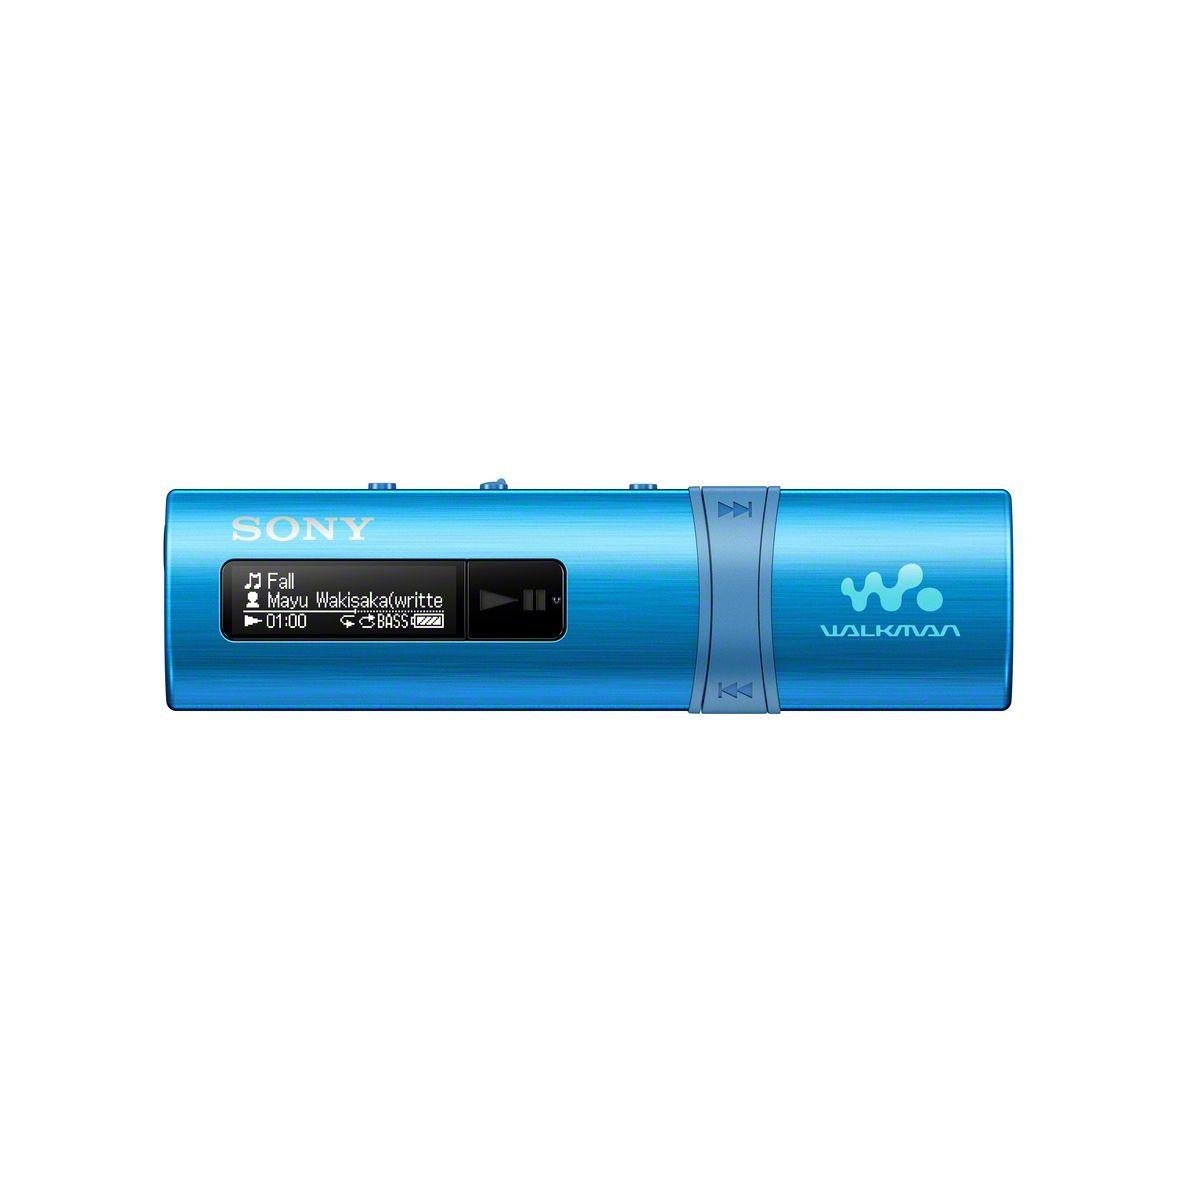 Sony Walkman 4GB MP3 Player Review